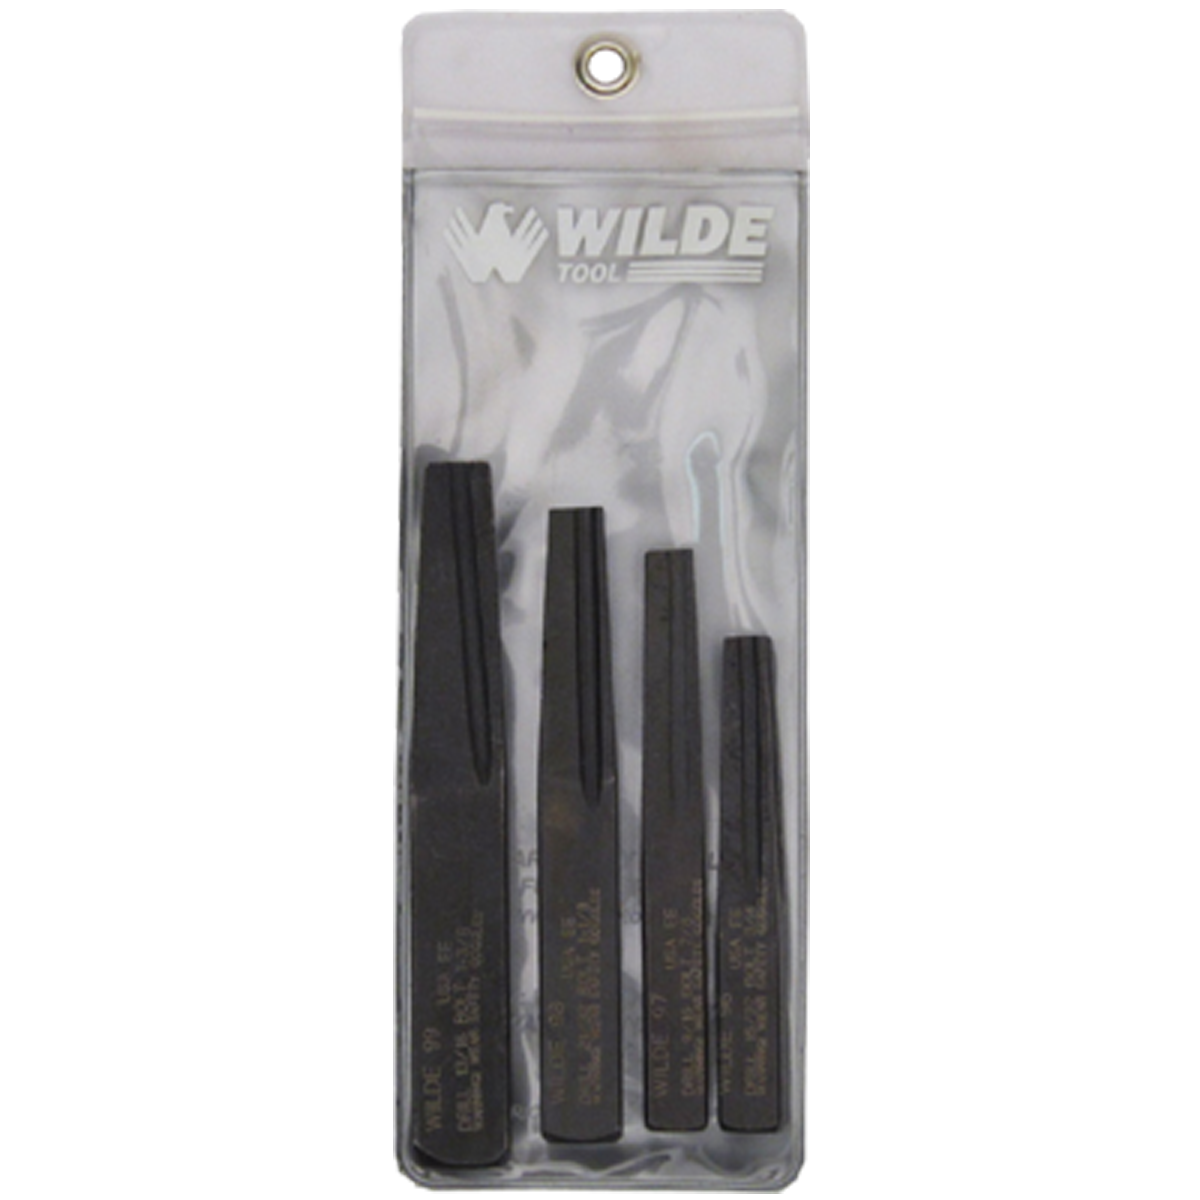 Wilde Tool 4-Piece Screw Extractor Set (Large Sizes), #89